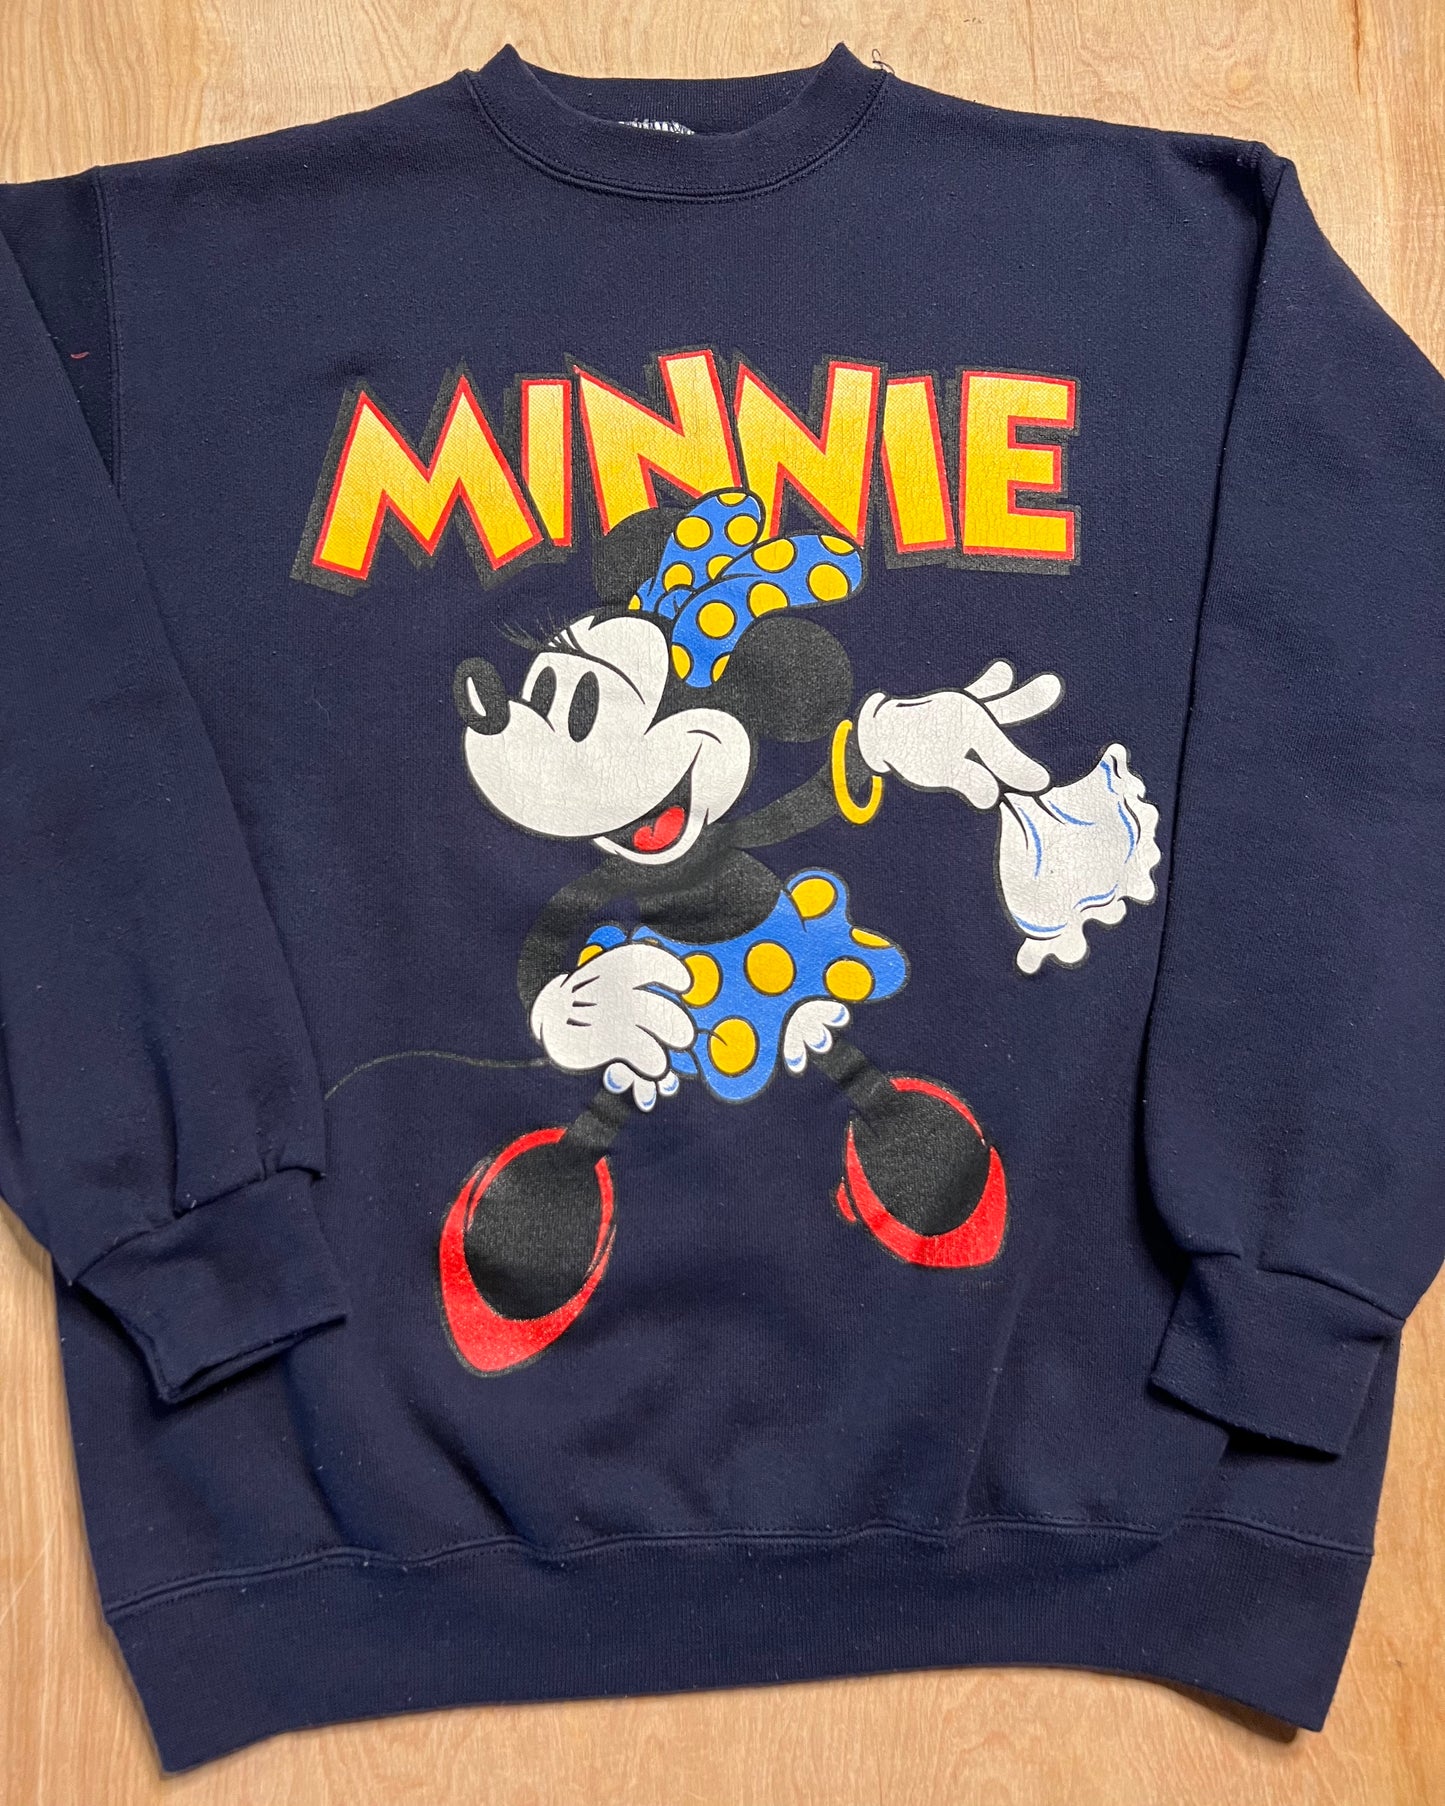 Vintage Minnie Mouse Crewneck